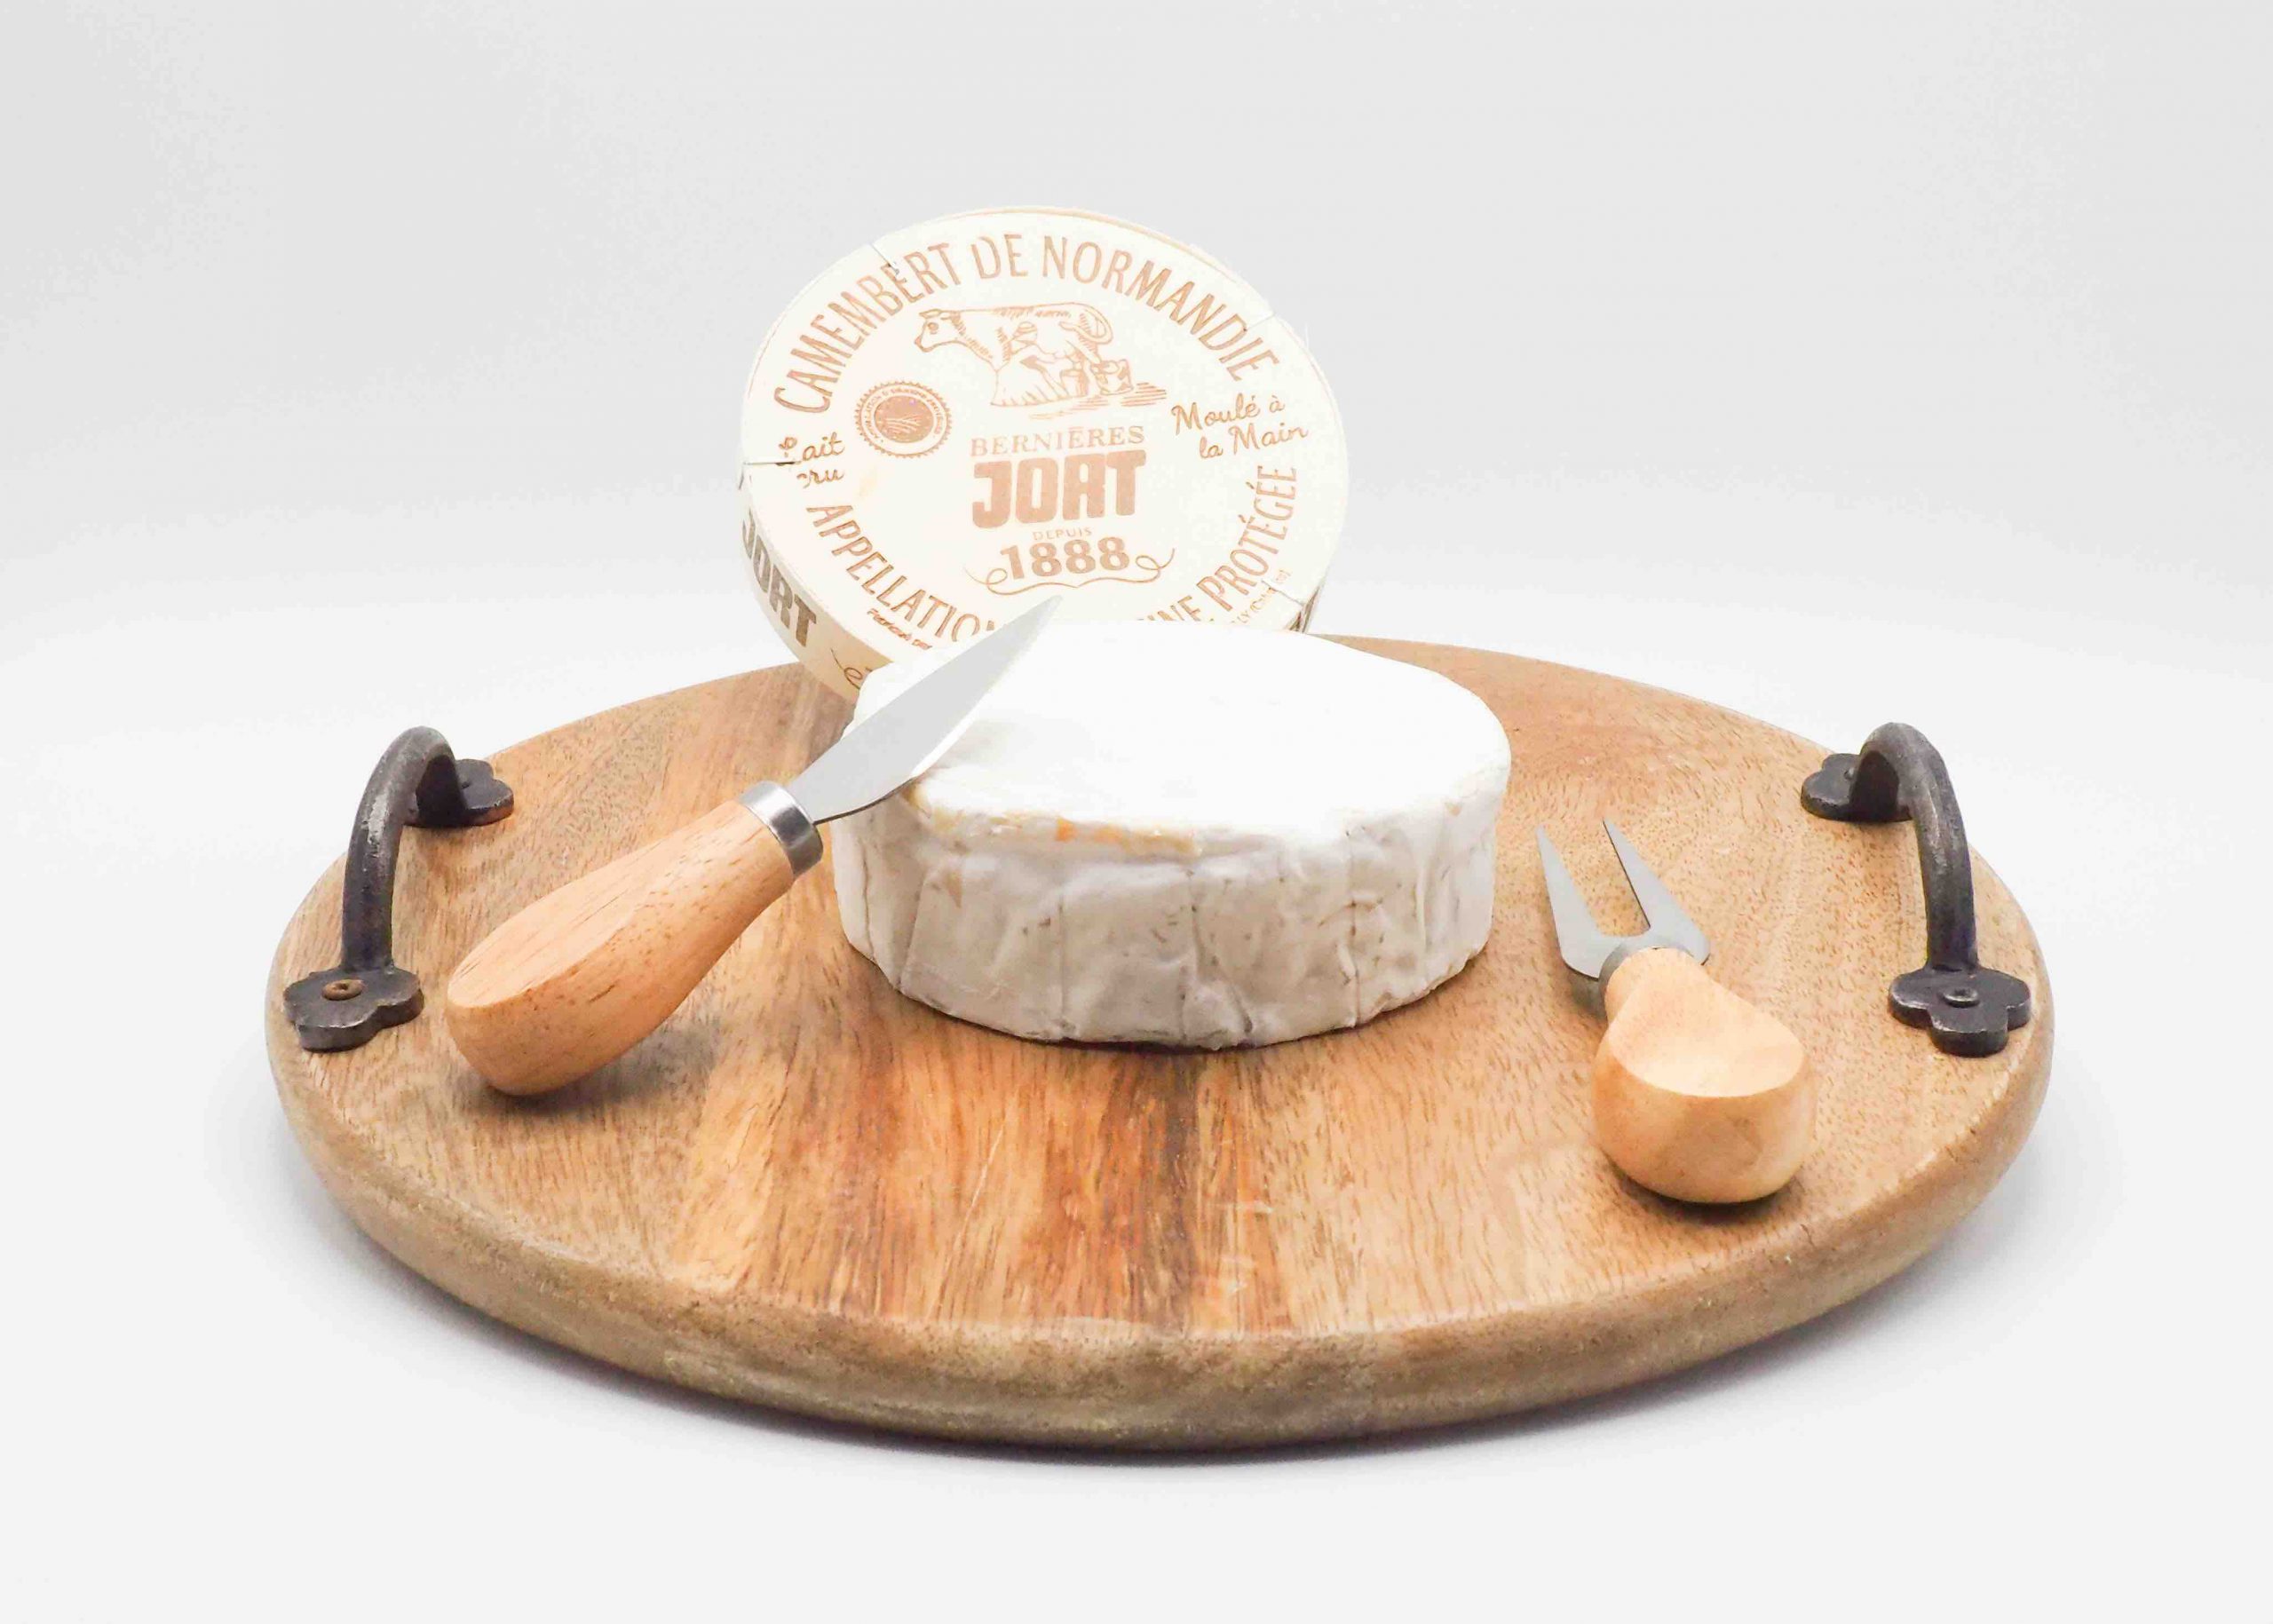 Achetez en ligne du fromage Camembert chez Fromage Napoléon. Vente en ligne.